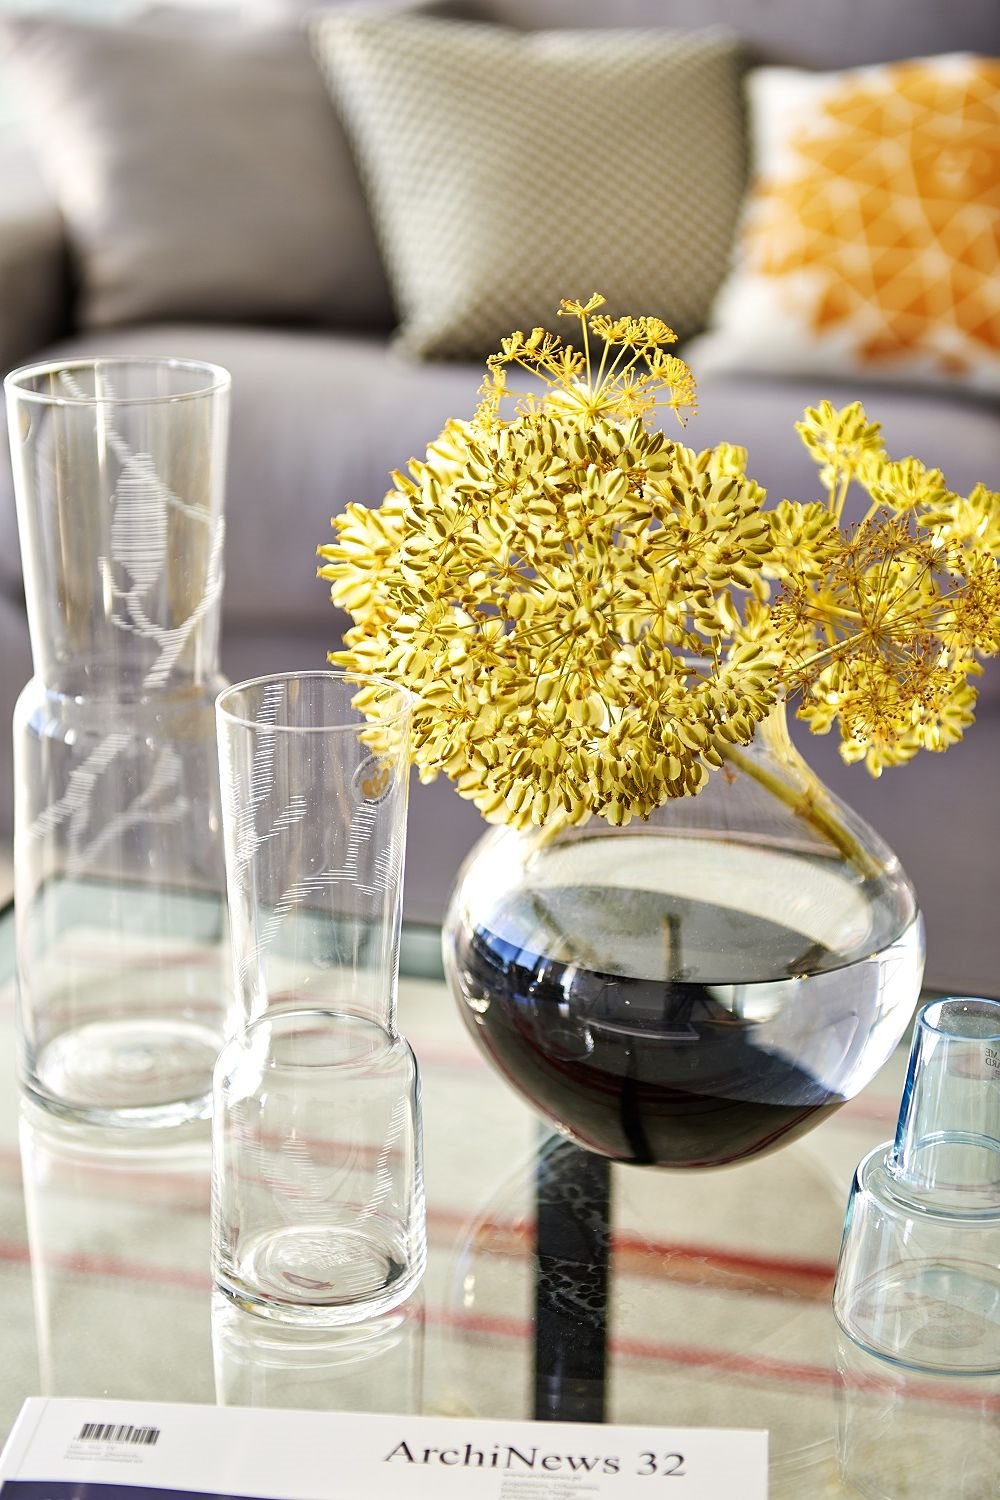 detalles decorativos con vidrio y flores amarillas